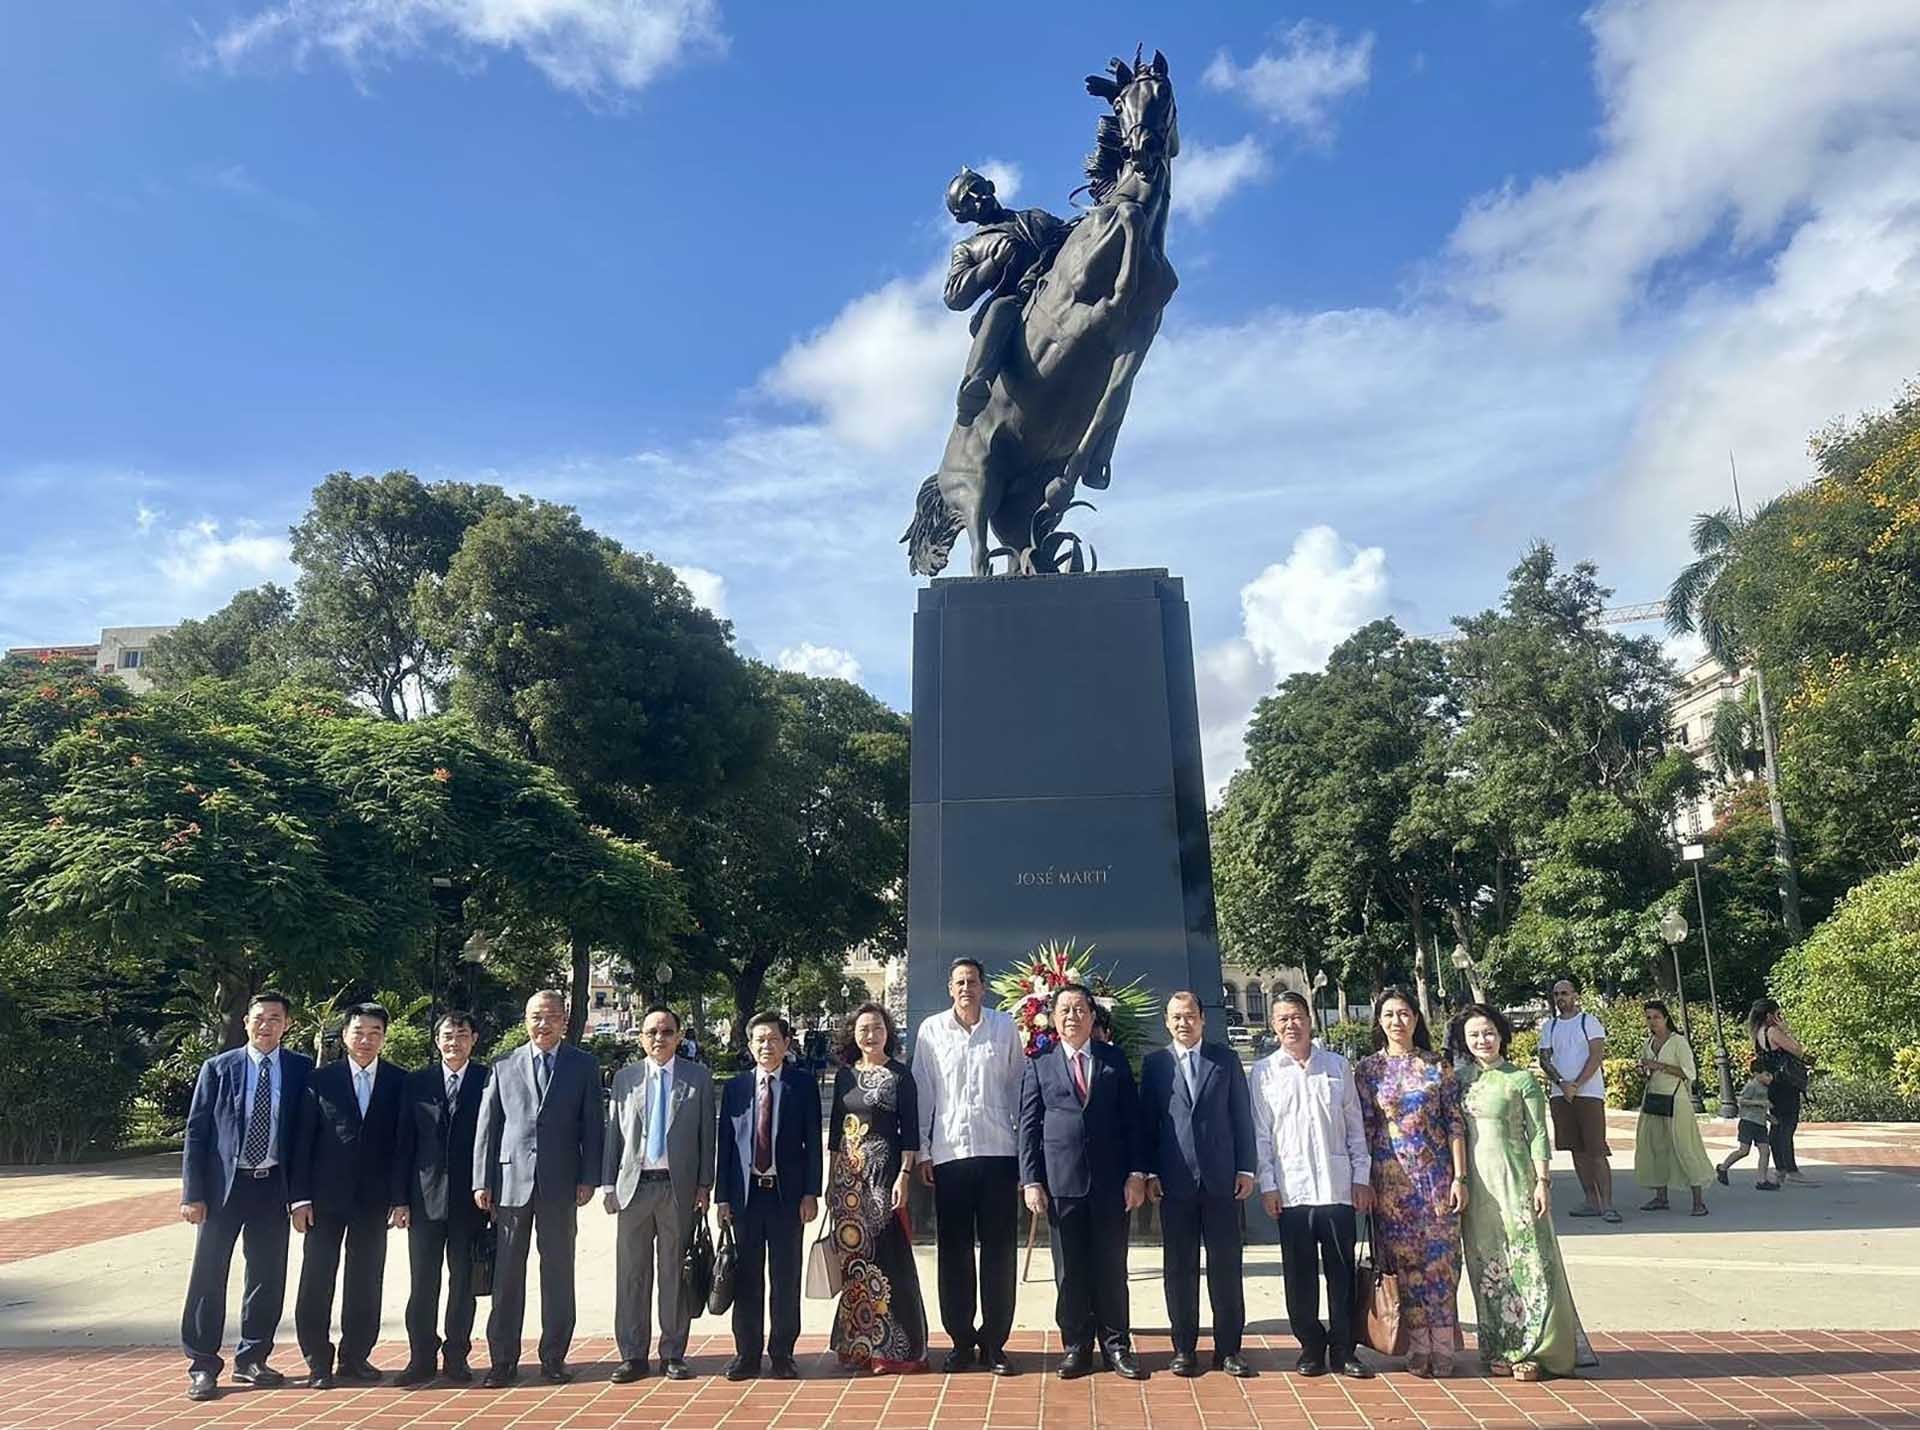 Đồng chí Nguyễn Trọng Nghĩa và đoàn công tác dâng hoa tại Đài tưởng niệm Anh hùng dân tộc Cuba Jose Marti tại thủ đô La Habana. (Nguồn: TTXVN)